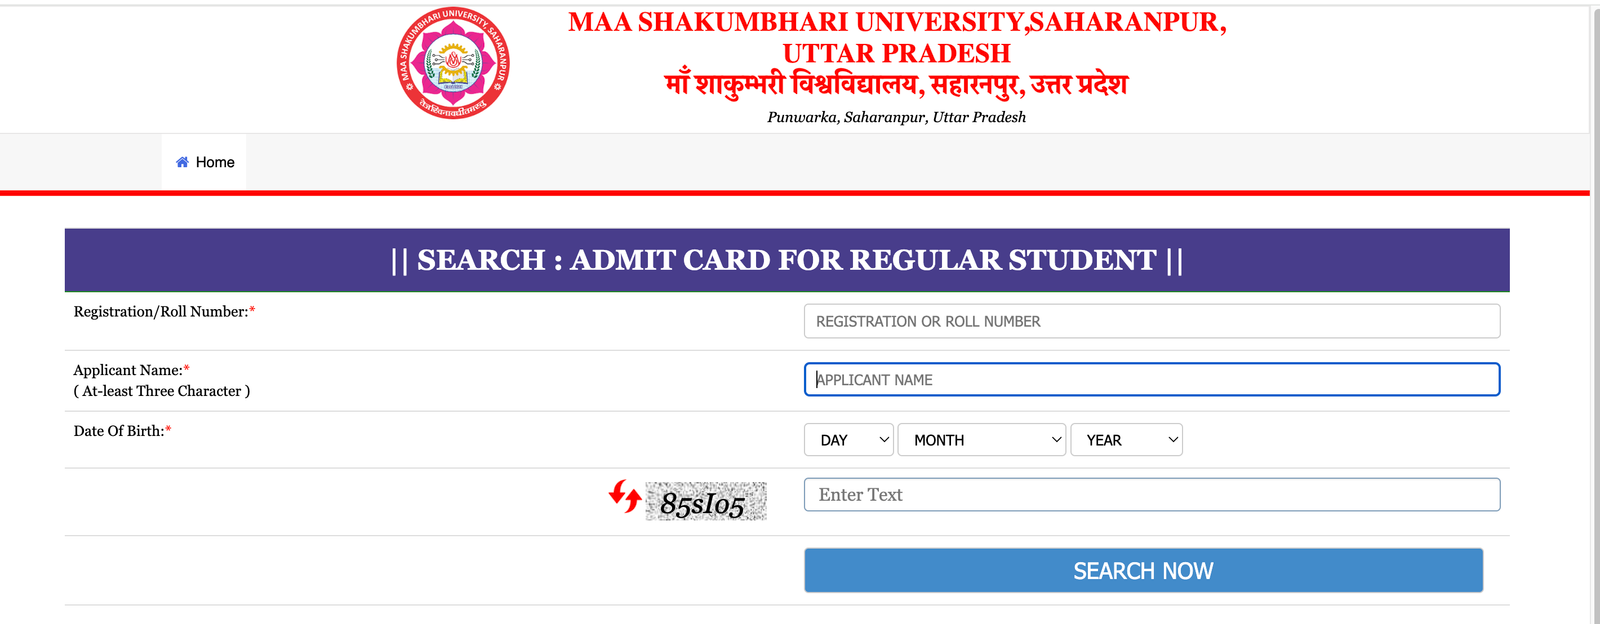 Maa Shakumbhari University Admit Card